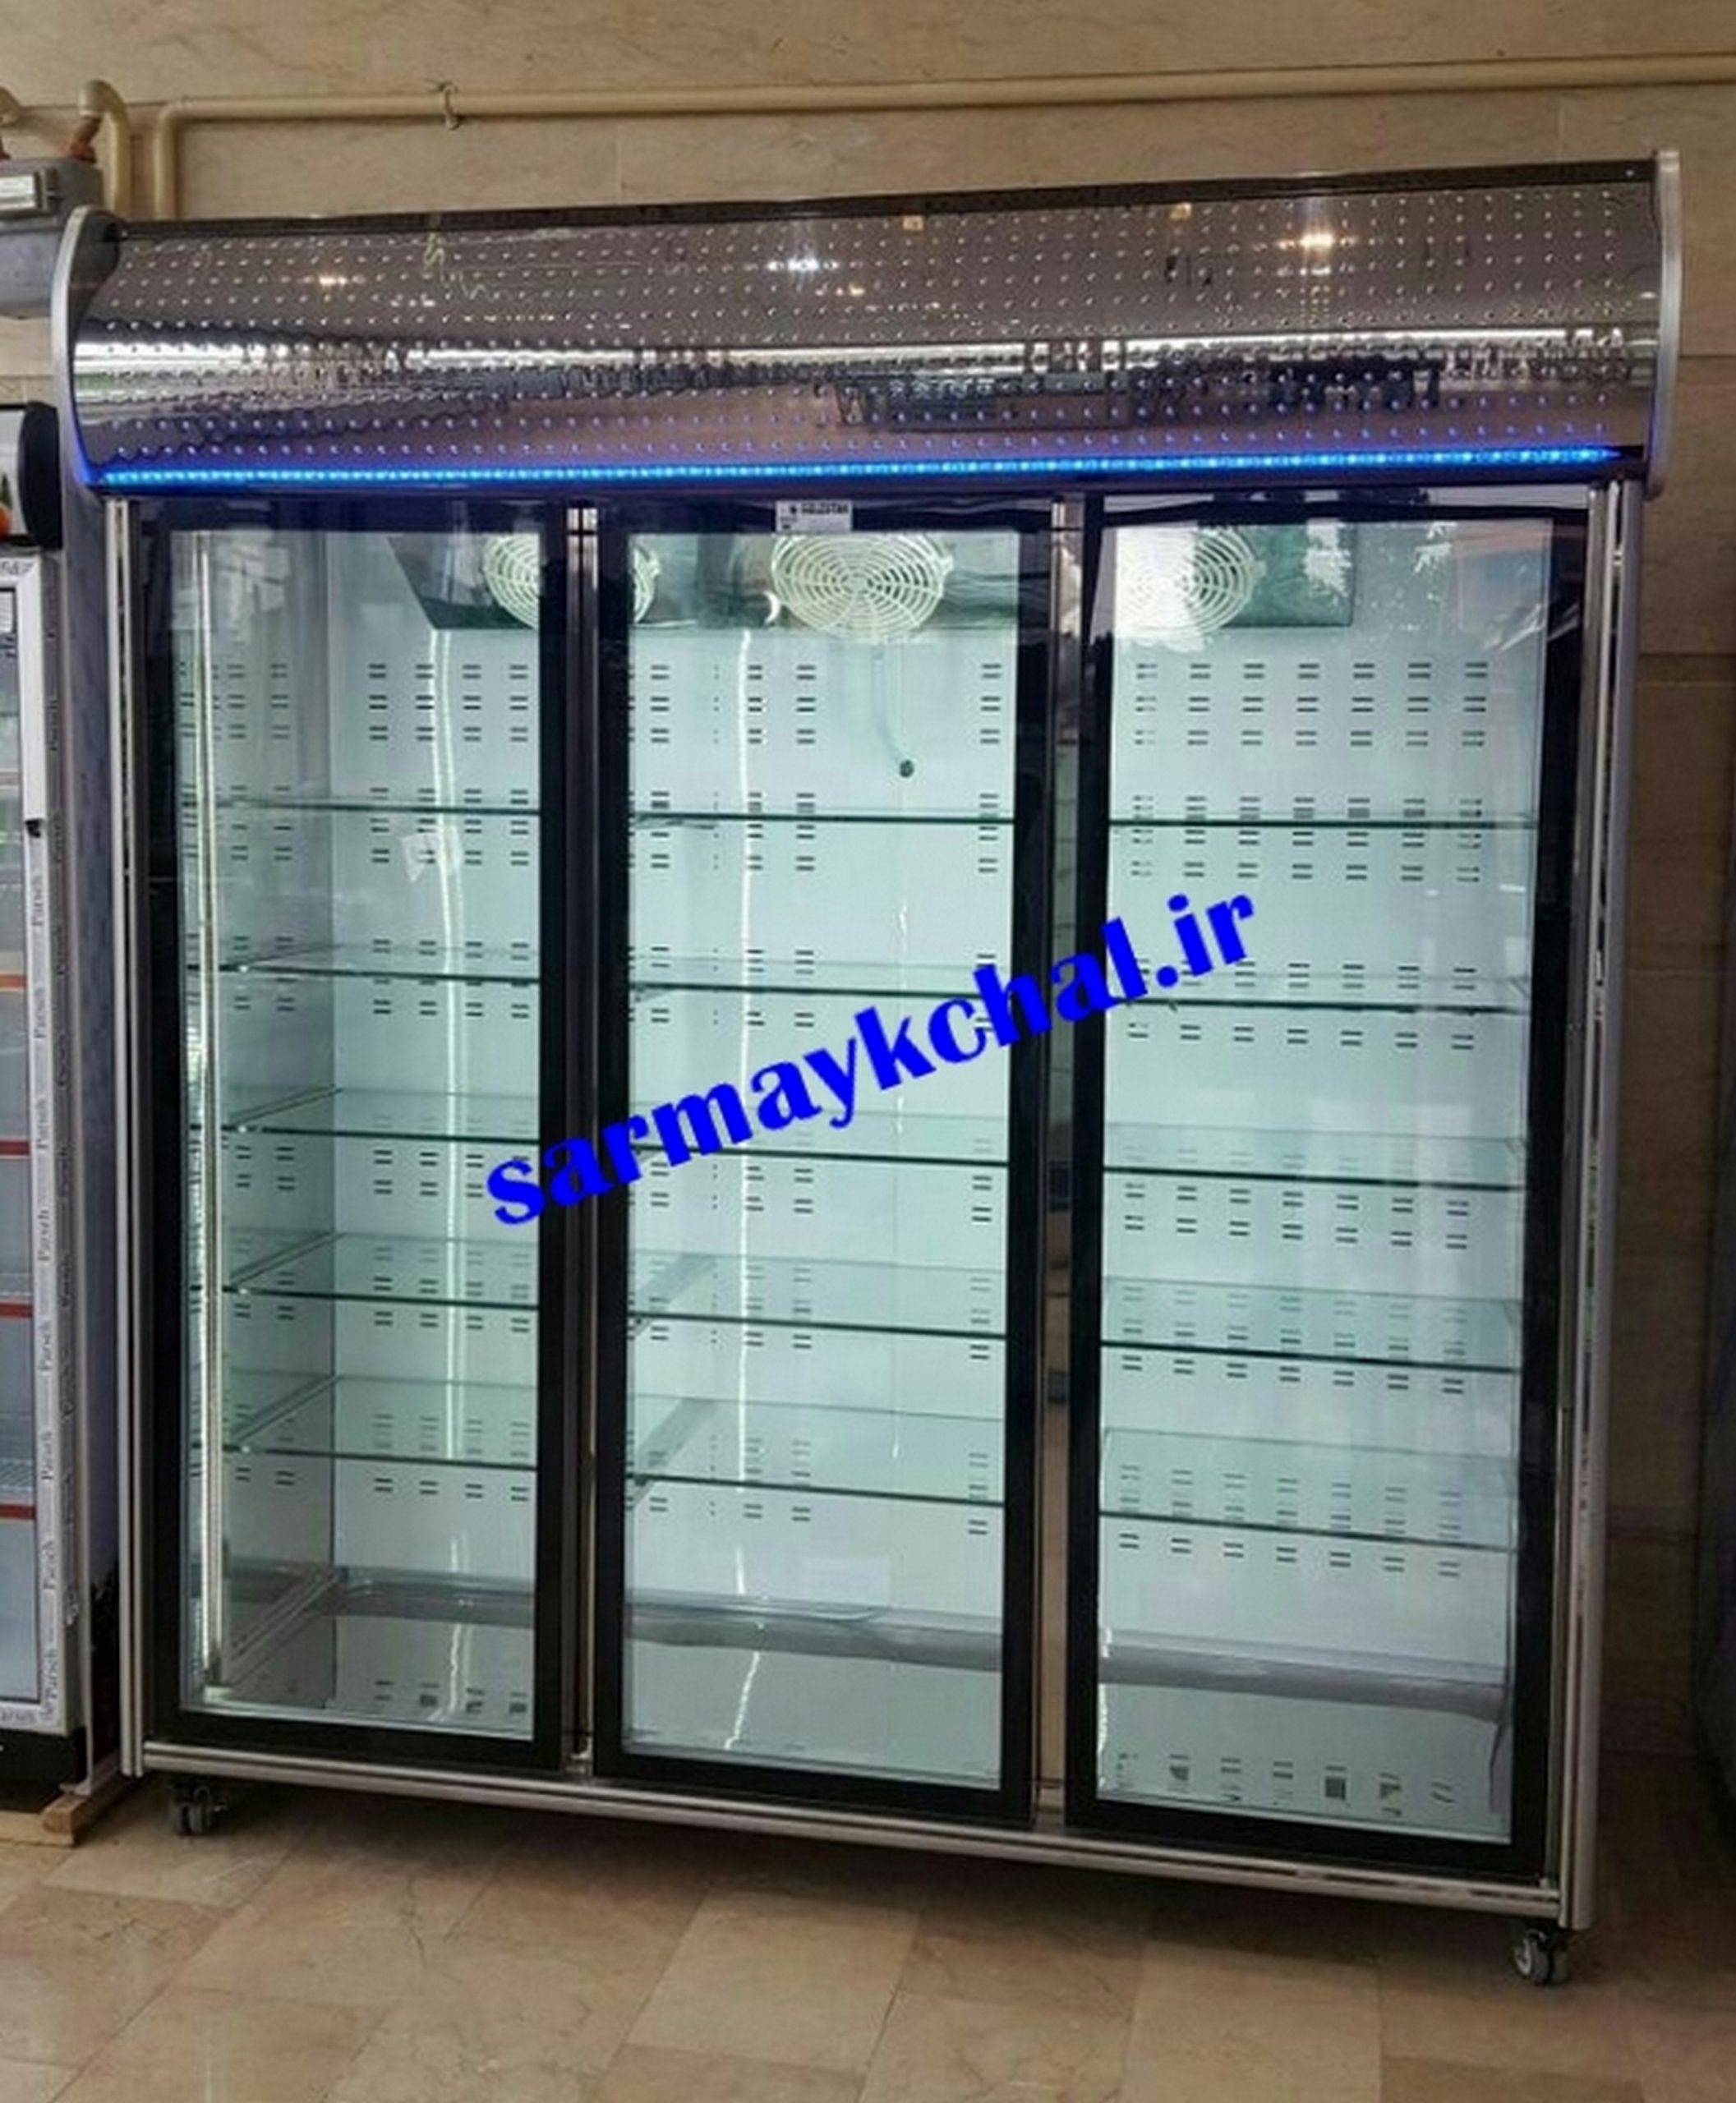 مرکز خرید یخچال ویترینی مغازه با قیمت ارزان در اصفهان